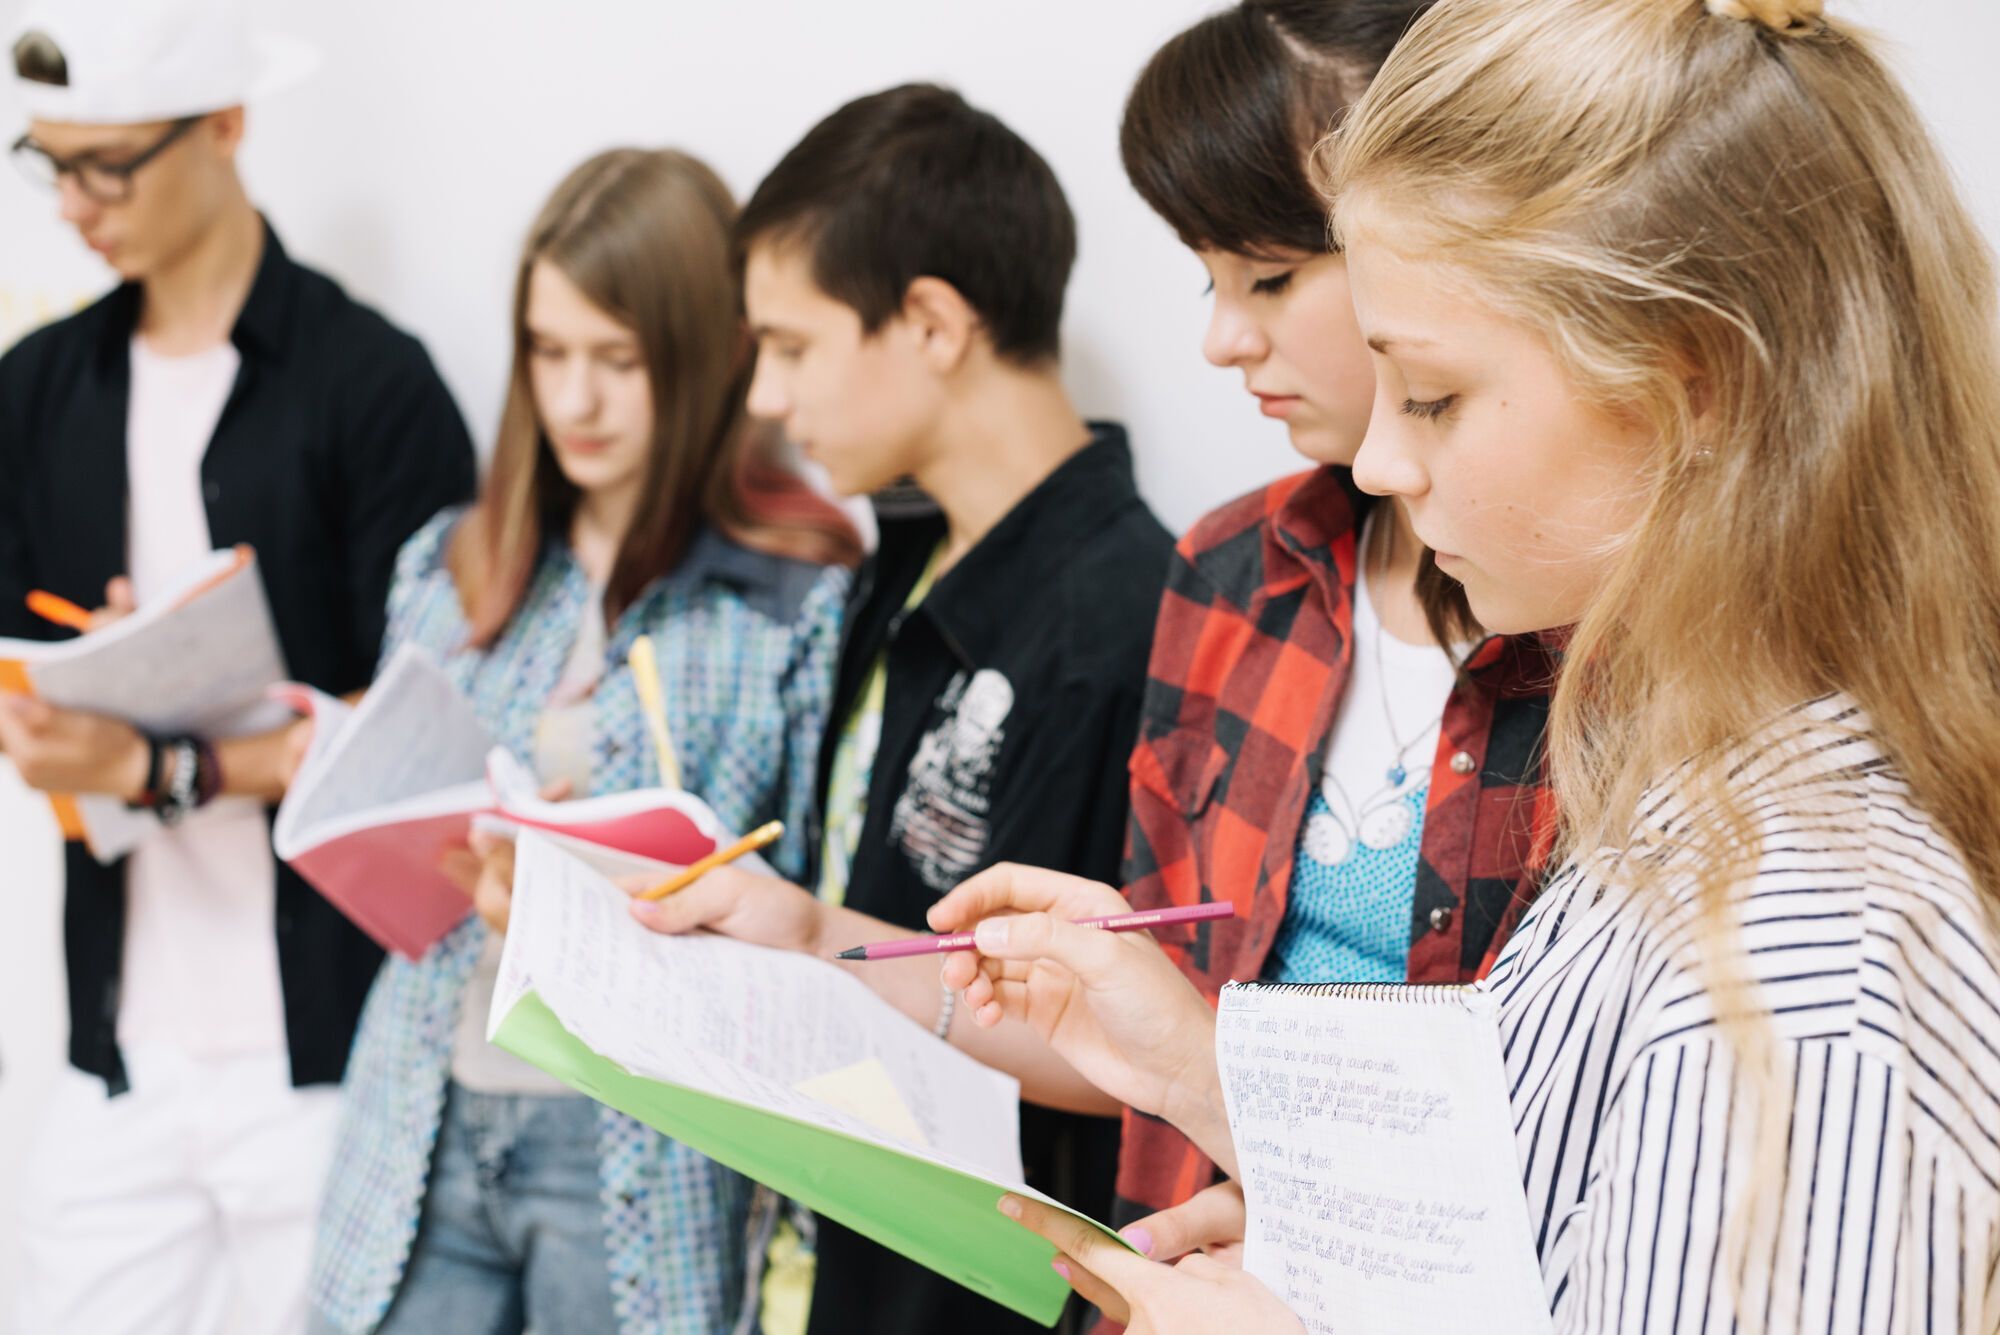 Они не испугались: образовательный эксперт объяснила, почему школьников Украины не нужно критиковать за PISA-2022, и показала красноречивое фото